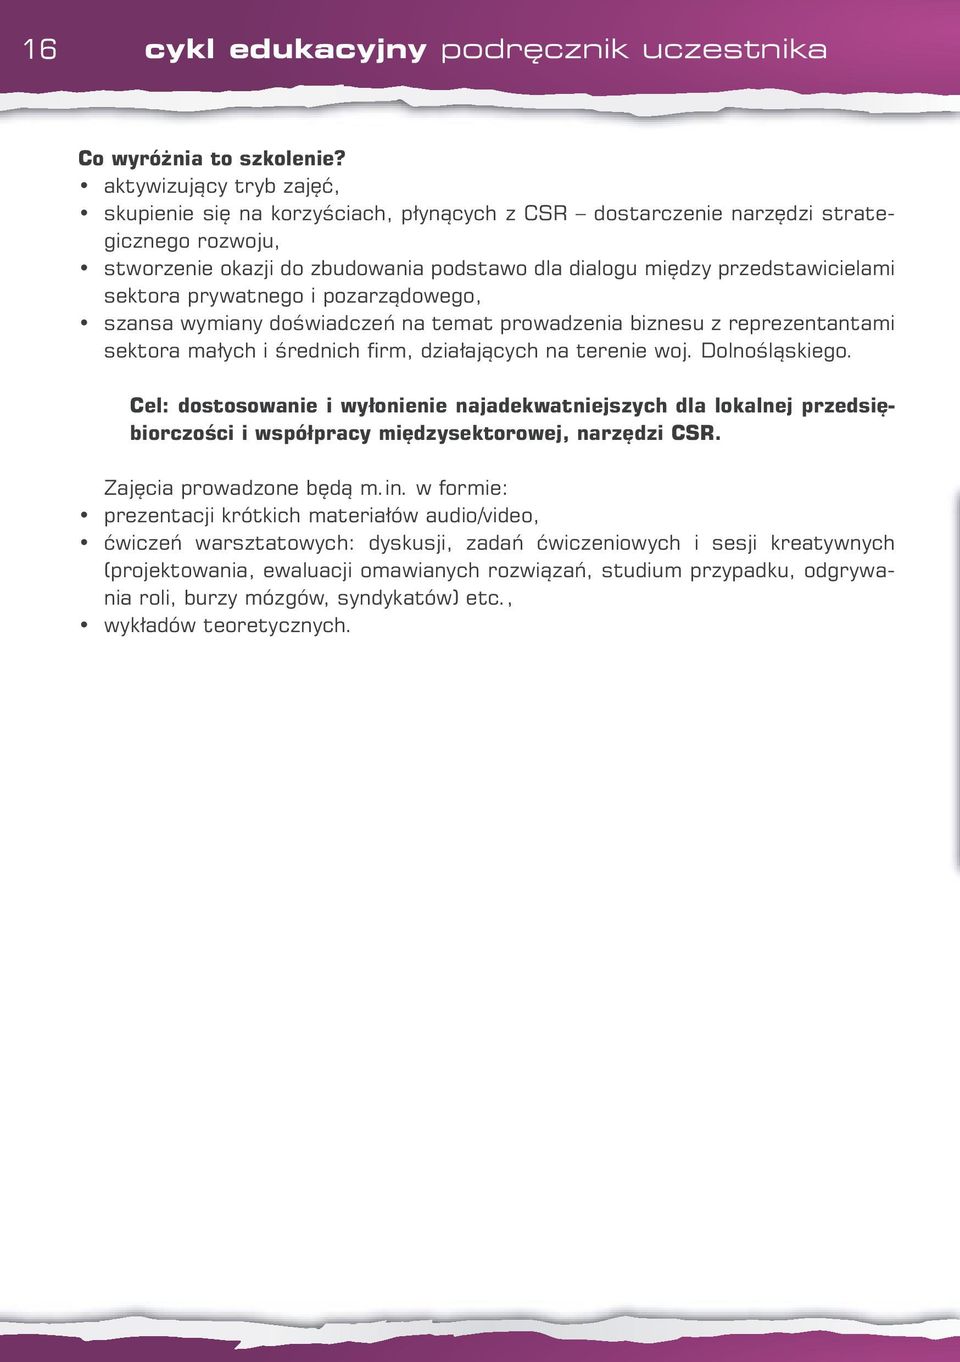 sektora prywatnego i pozarządowego, szansa wymiany doświadczeń na temat prowadzenia biznesu z reprezentantami sektora małych i średnich firm, działających na terenie woj. Dolnośląskiego.